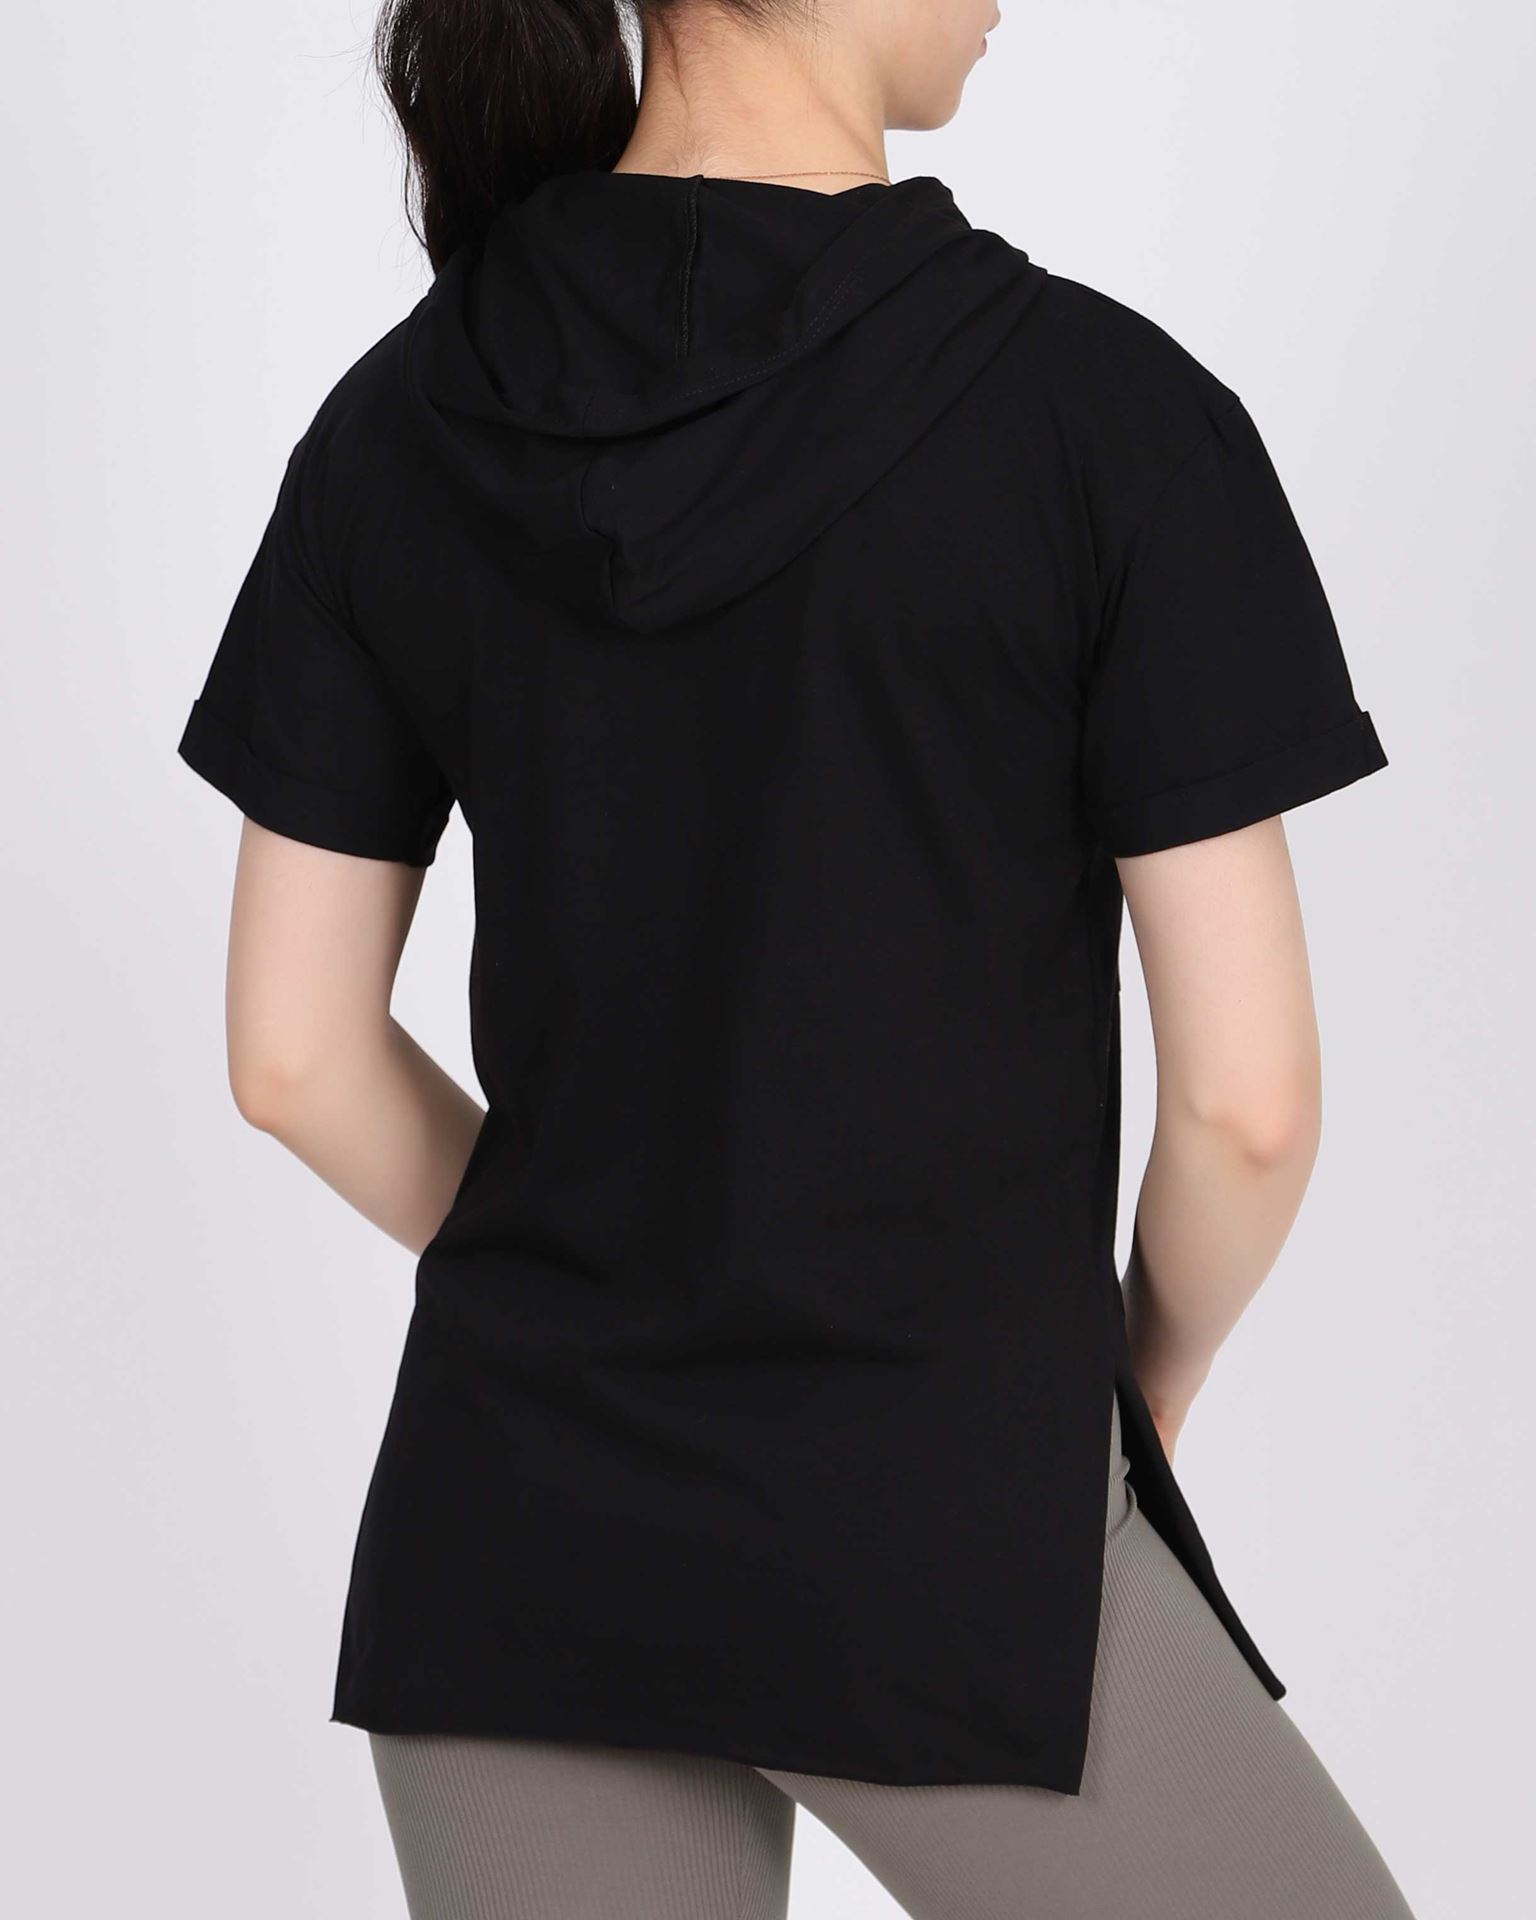 Siyah Kapşonlu Ayıcık Tasarımlı T-shirt TSH296